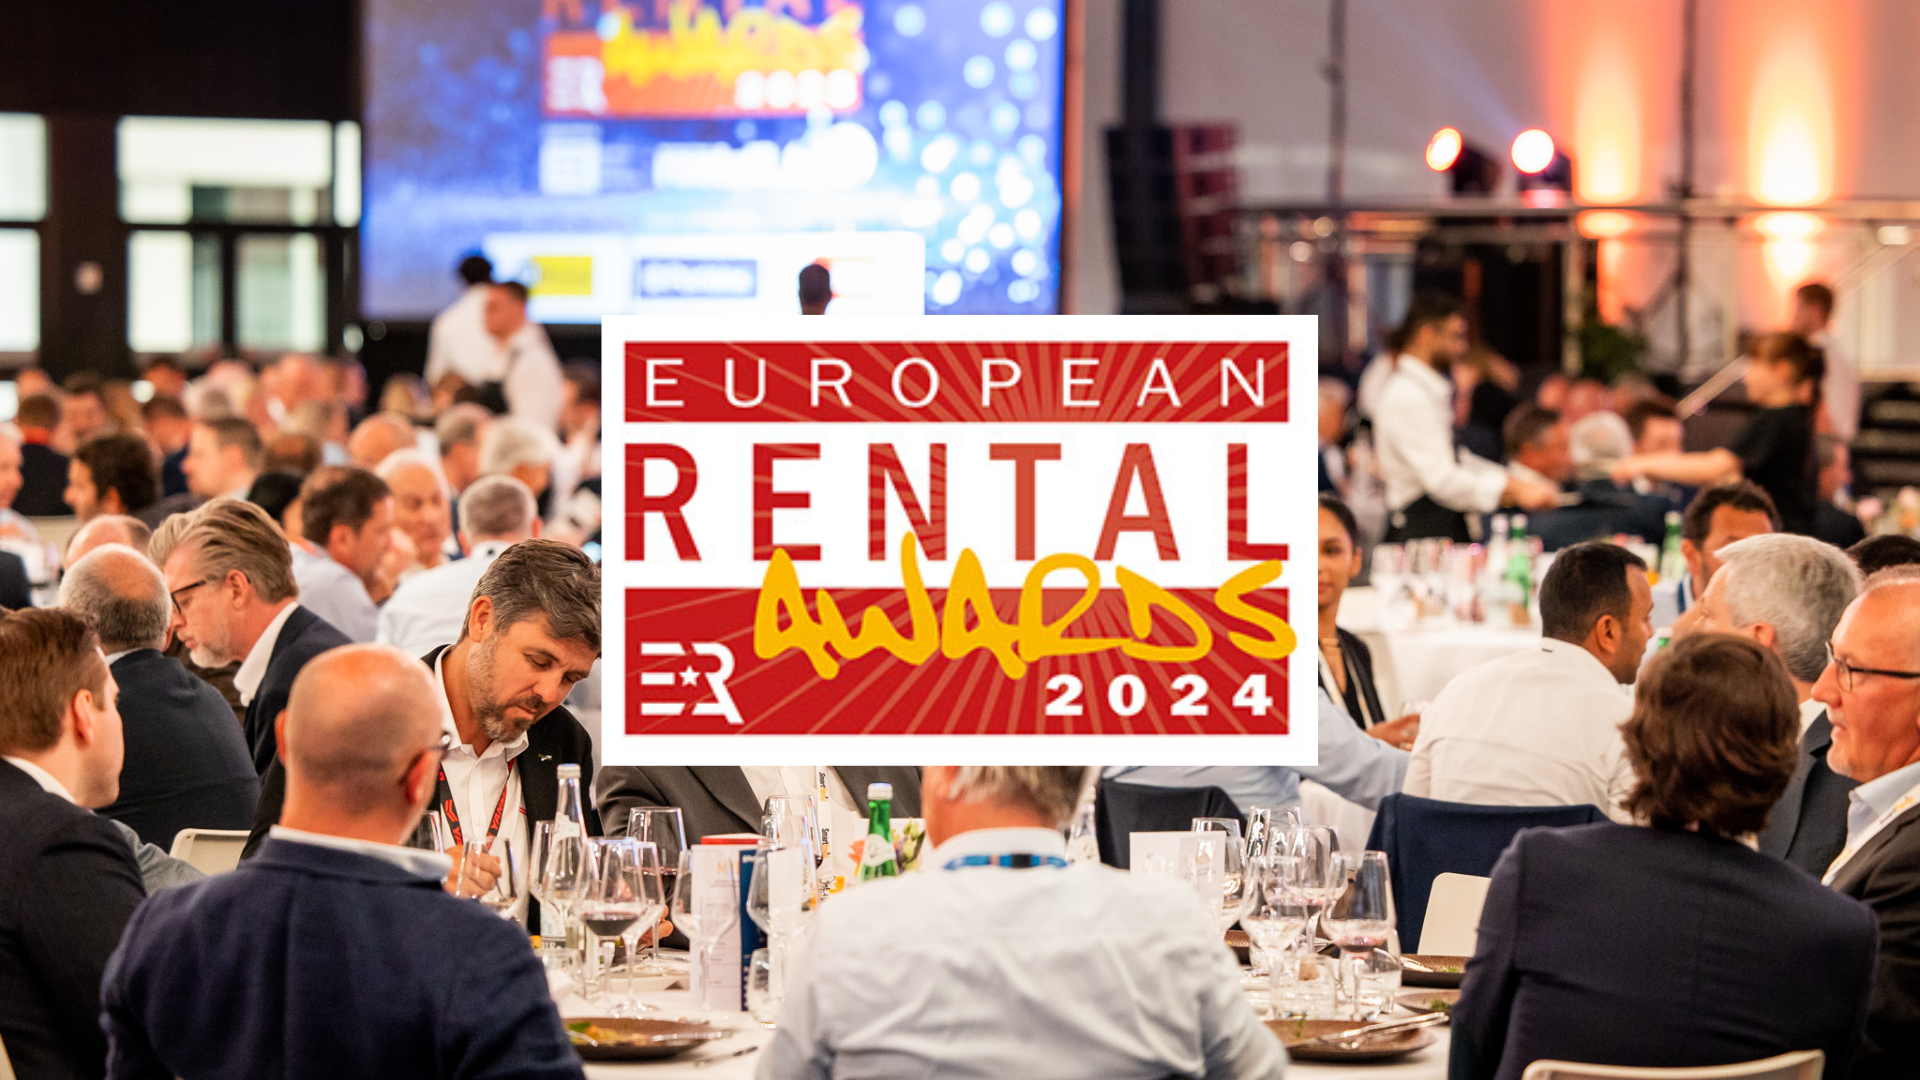  European Rental Awards 2024